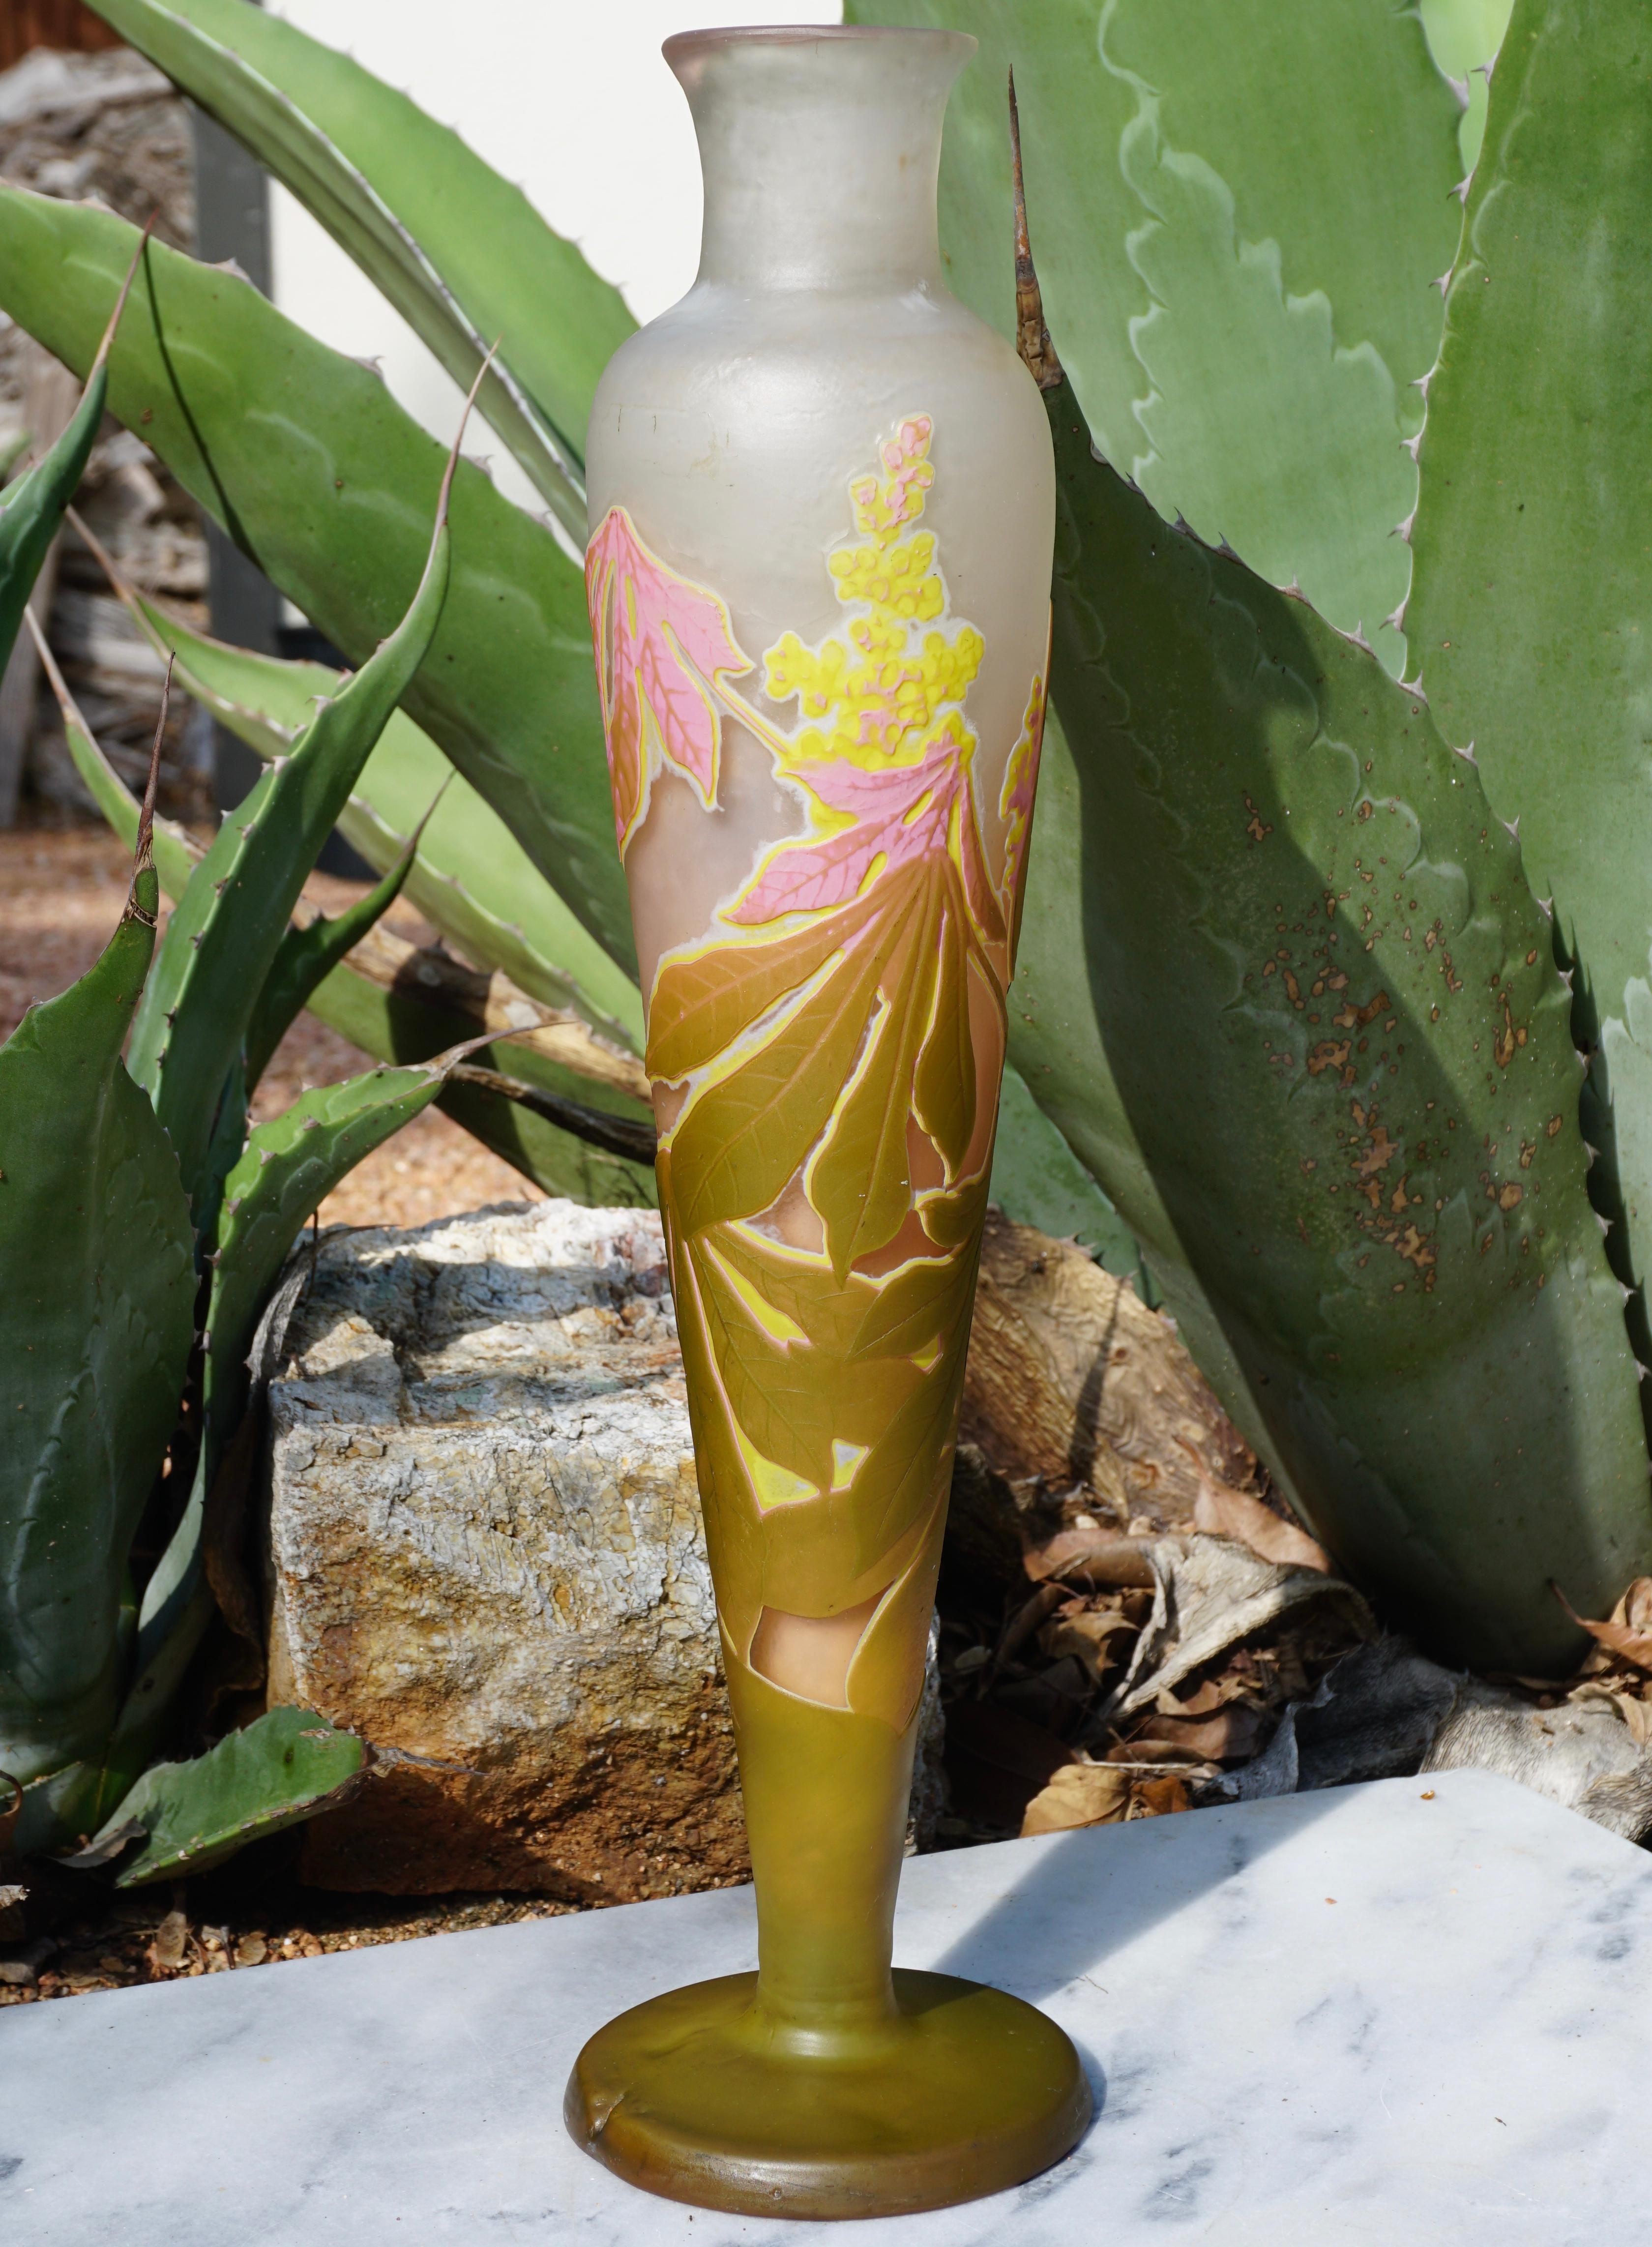 Un étonnant vase de graisse sculpté à la roue et gravé à l'acide en quatre couleurs : rose, jaune, vert et blanc sur un fond crème. La coloration est forte et la fabrication excellente. Une expression vraiment explosive des plantes en fleur et en